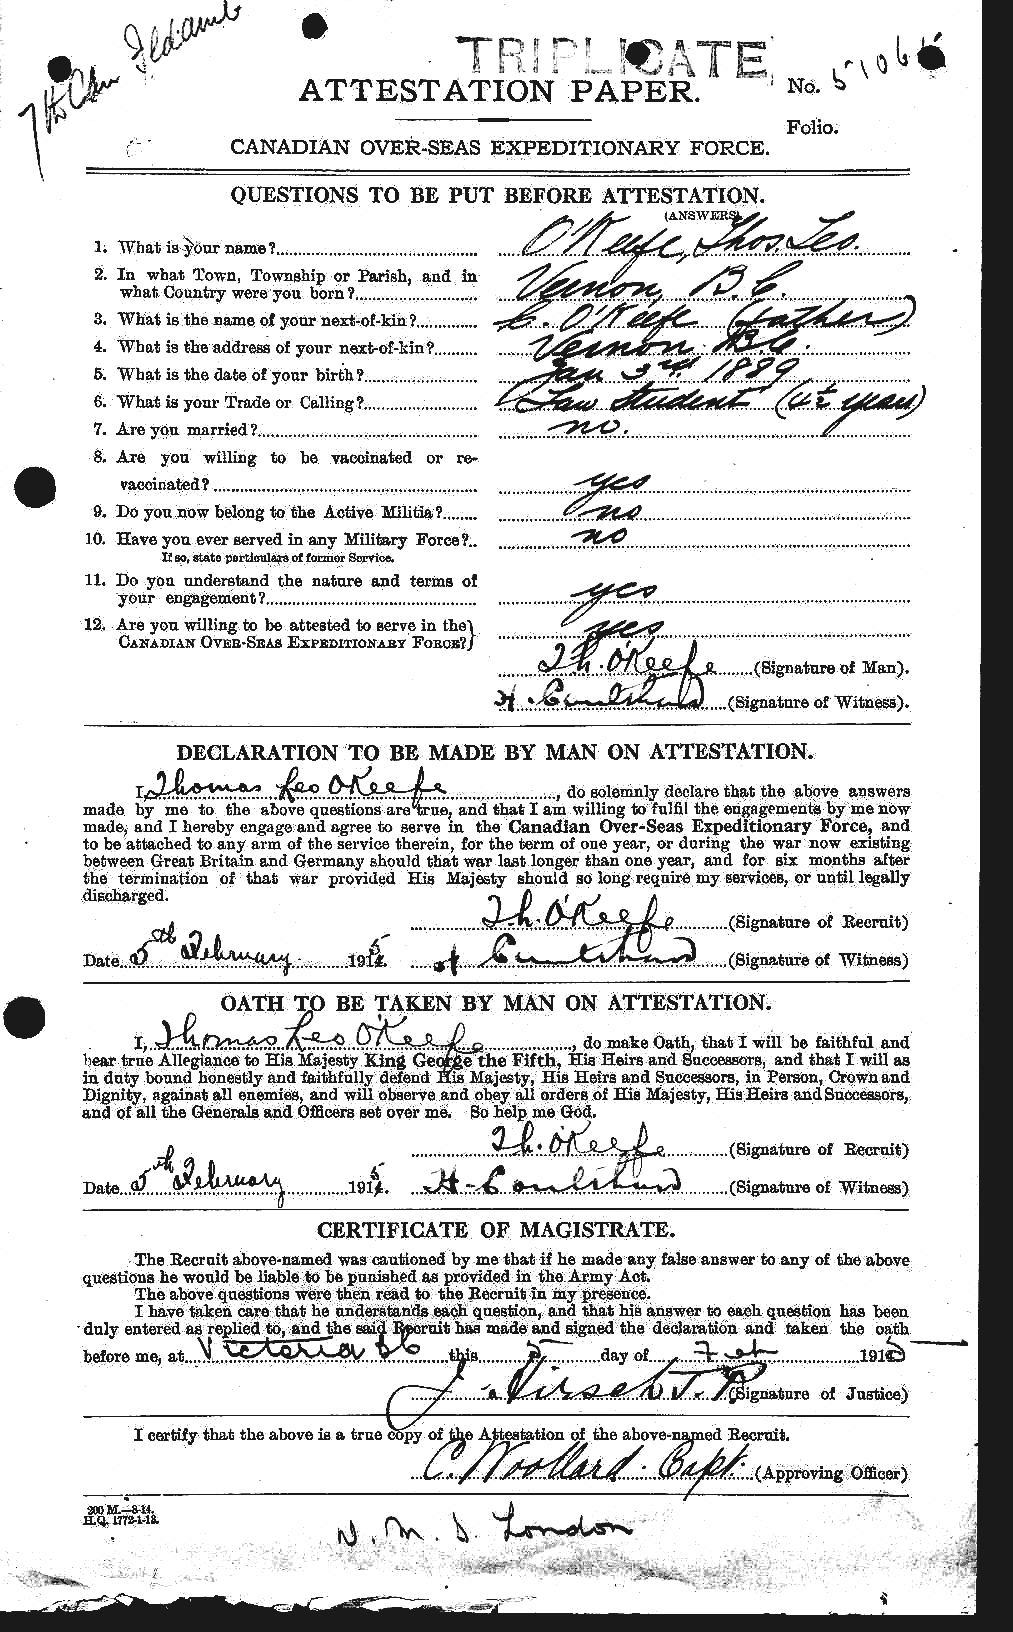 Dossiers du Personnel de la Première Guerre mondiale - CEC 556352a